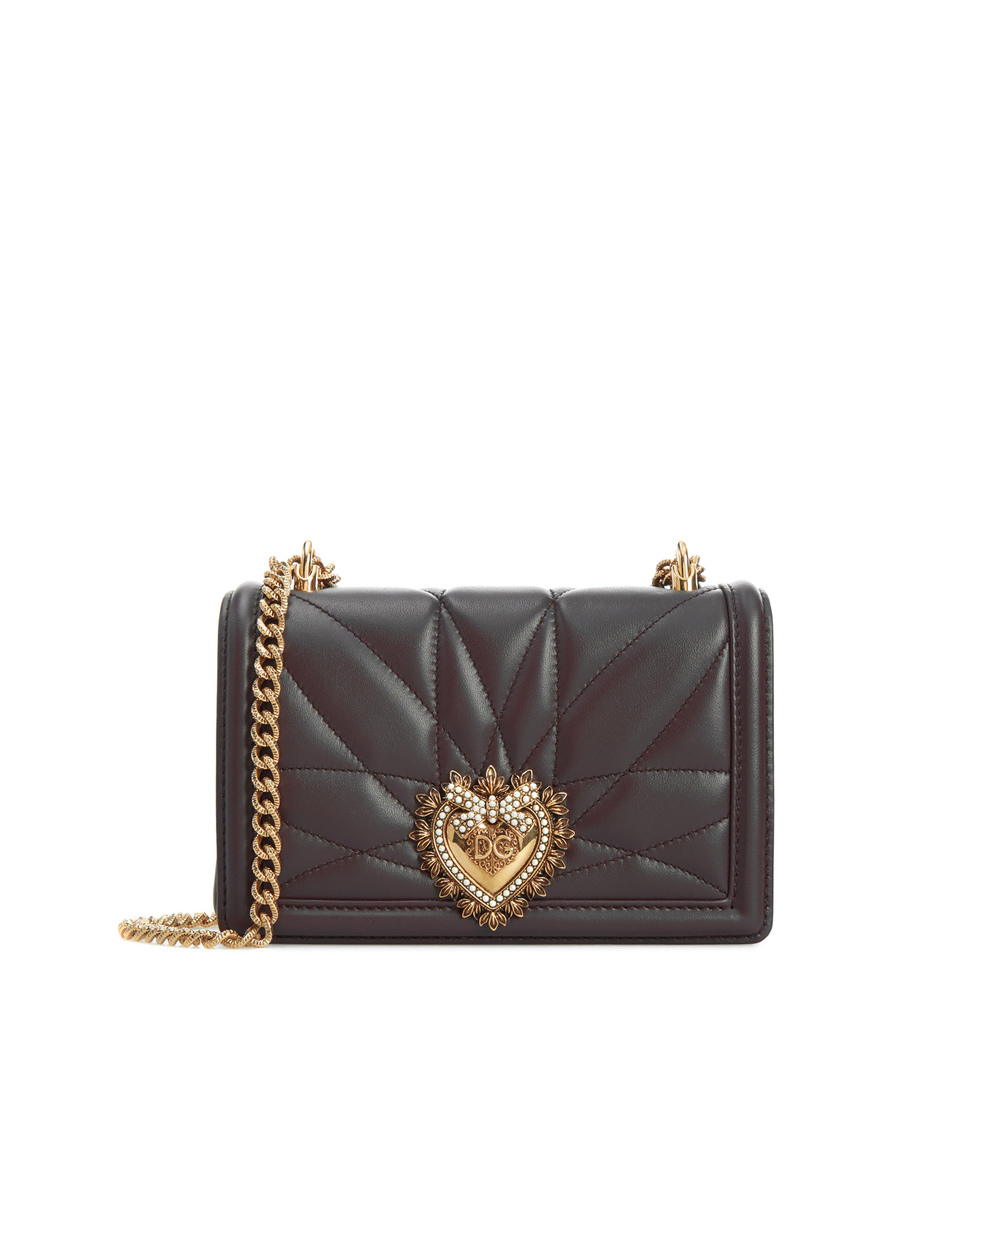 Кожаная сумка Devotion mini Dolce&Gabbana BB6880-AV967, бордовый цвет • Купить в интернет-магазине Kameron